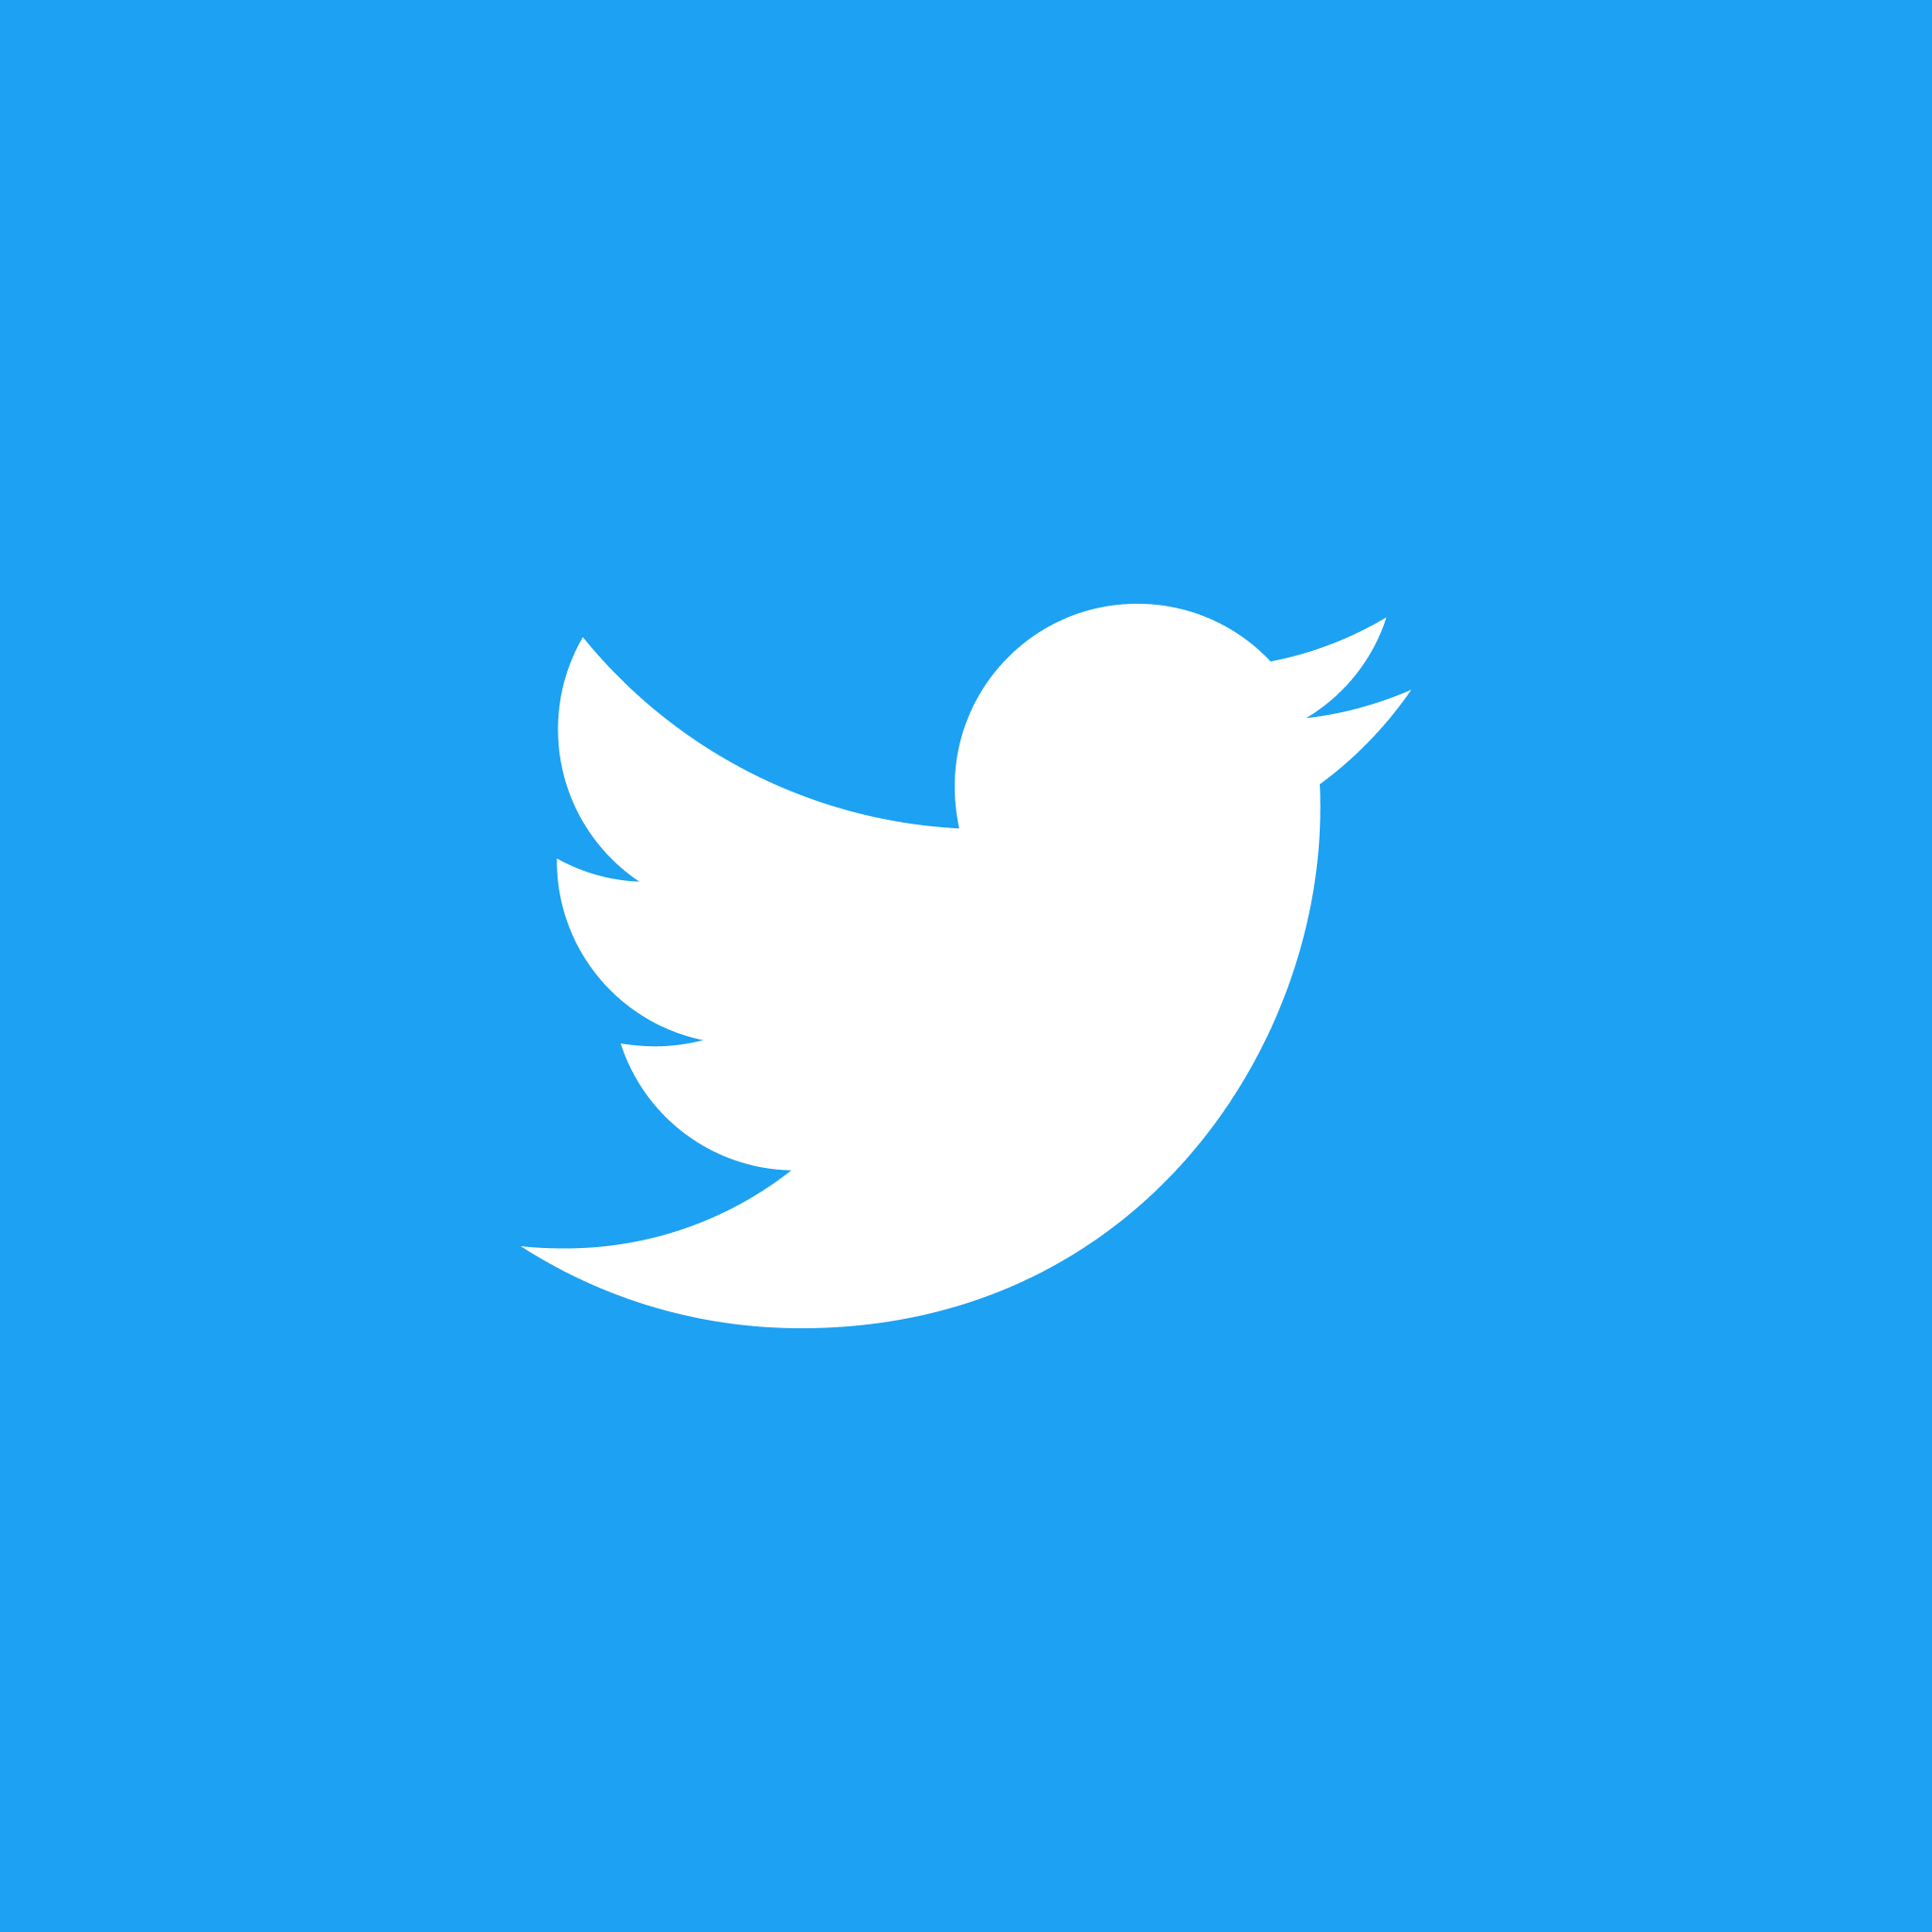 รูปภาพ #1 ของวิธีเปลี่ยนไอคอน Twitter จากเครื่องหมาย 'X' เป็น Blue Bird